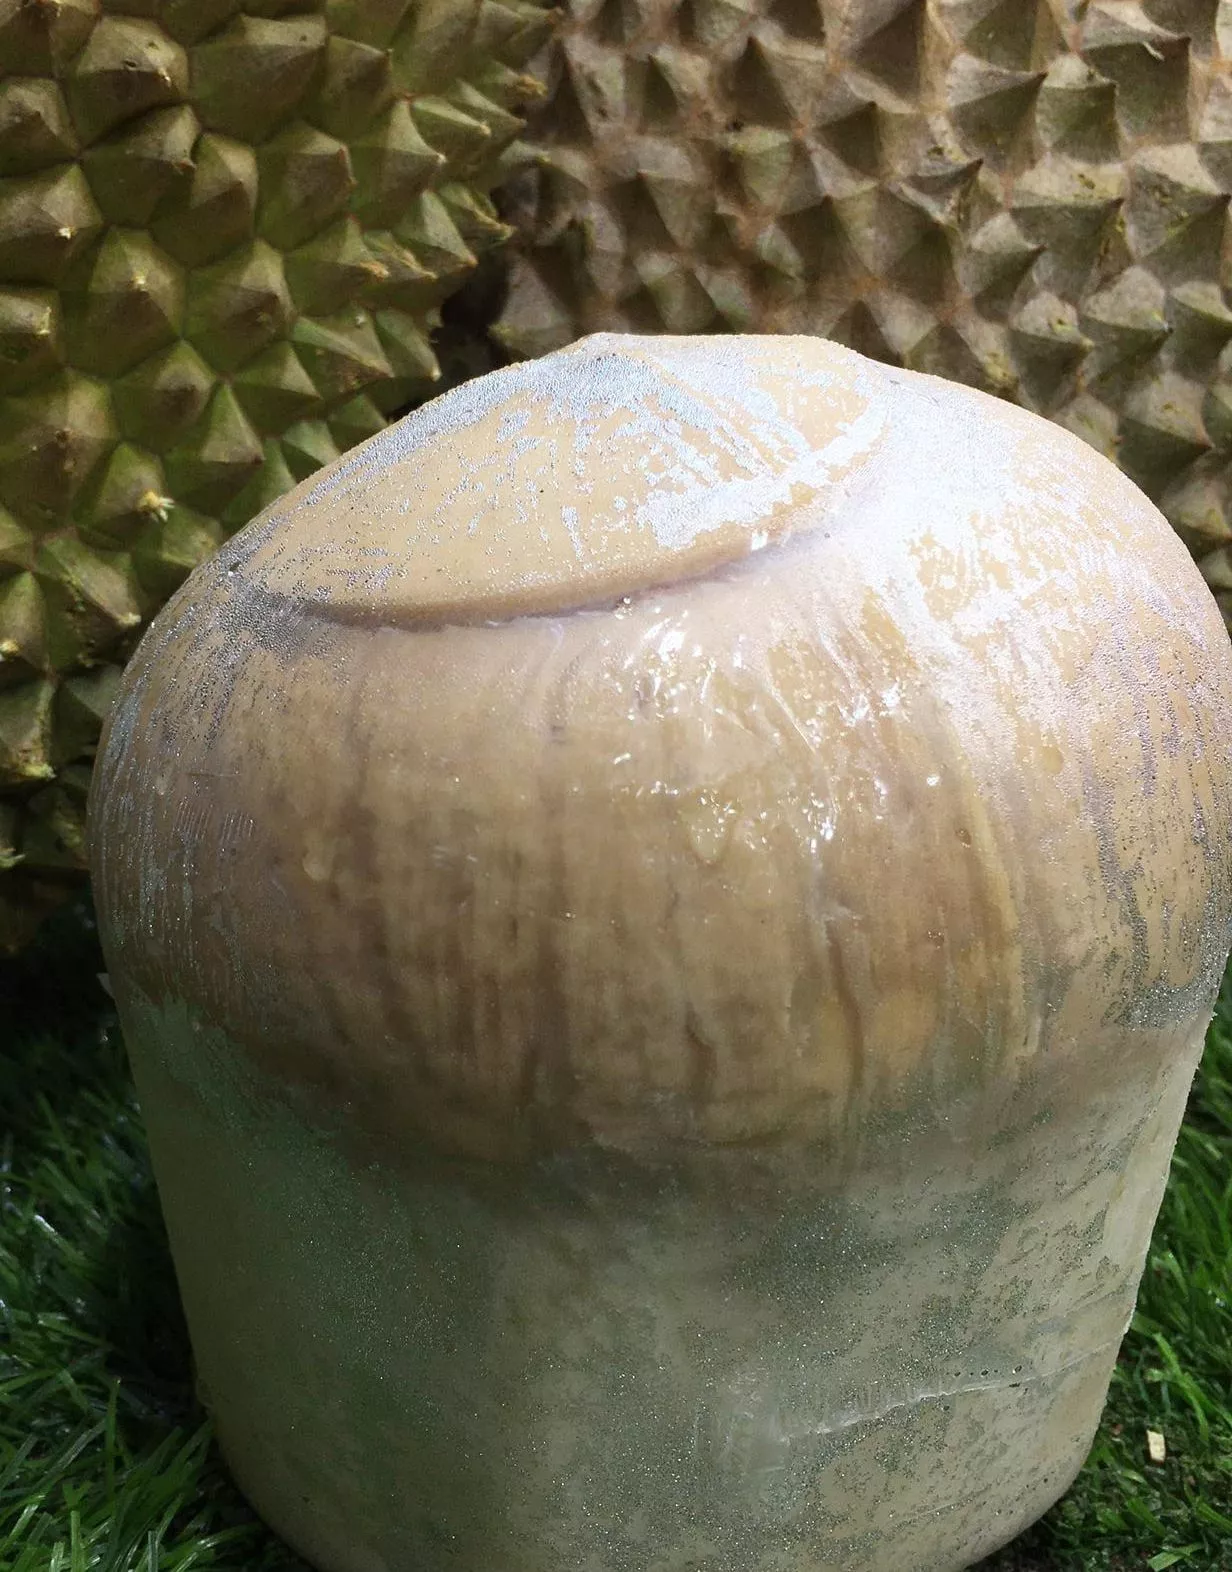 Thailand coconut